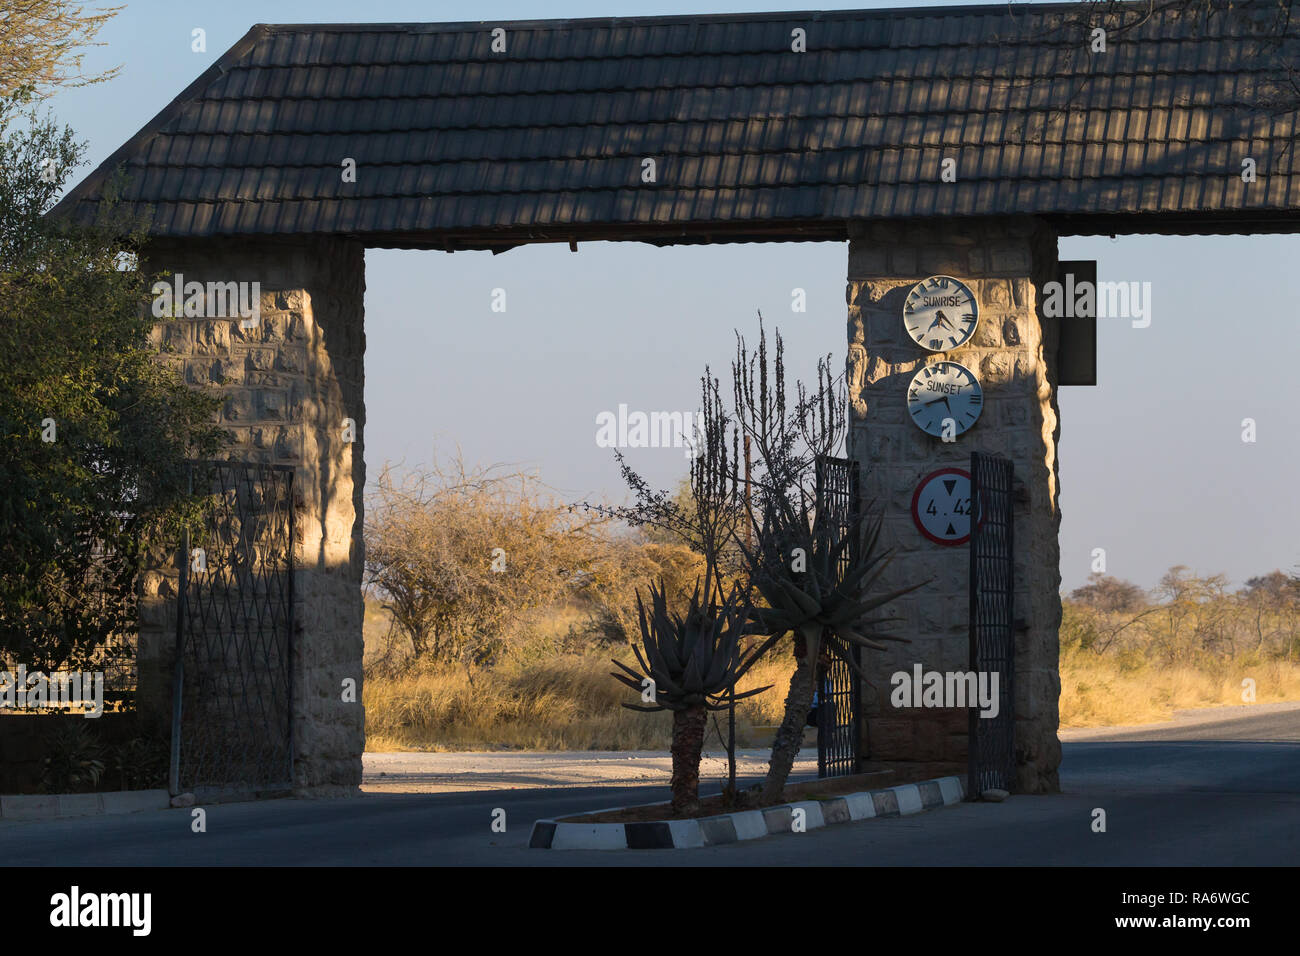 Okaukuejo rest camp cancello aperto e dando tempi di chiusura e di apertura su un orologio sul muro di pietra nel Parco Nazionale Etosha, Namibia Foto Stock